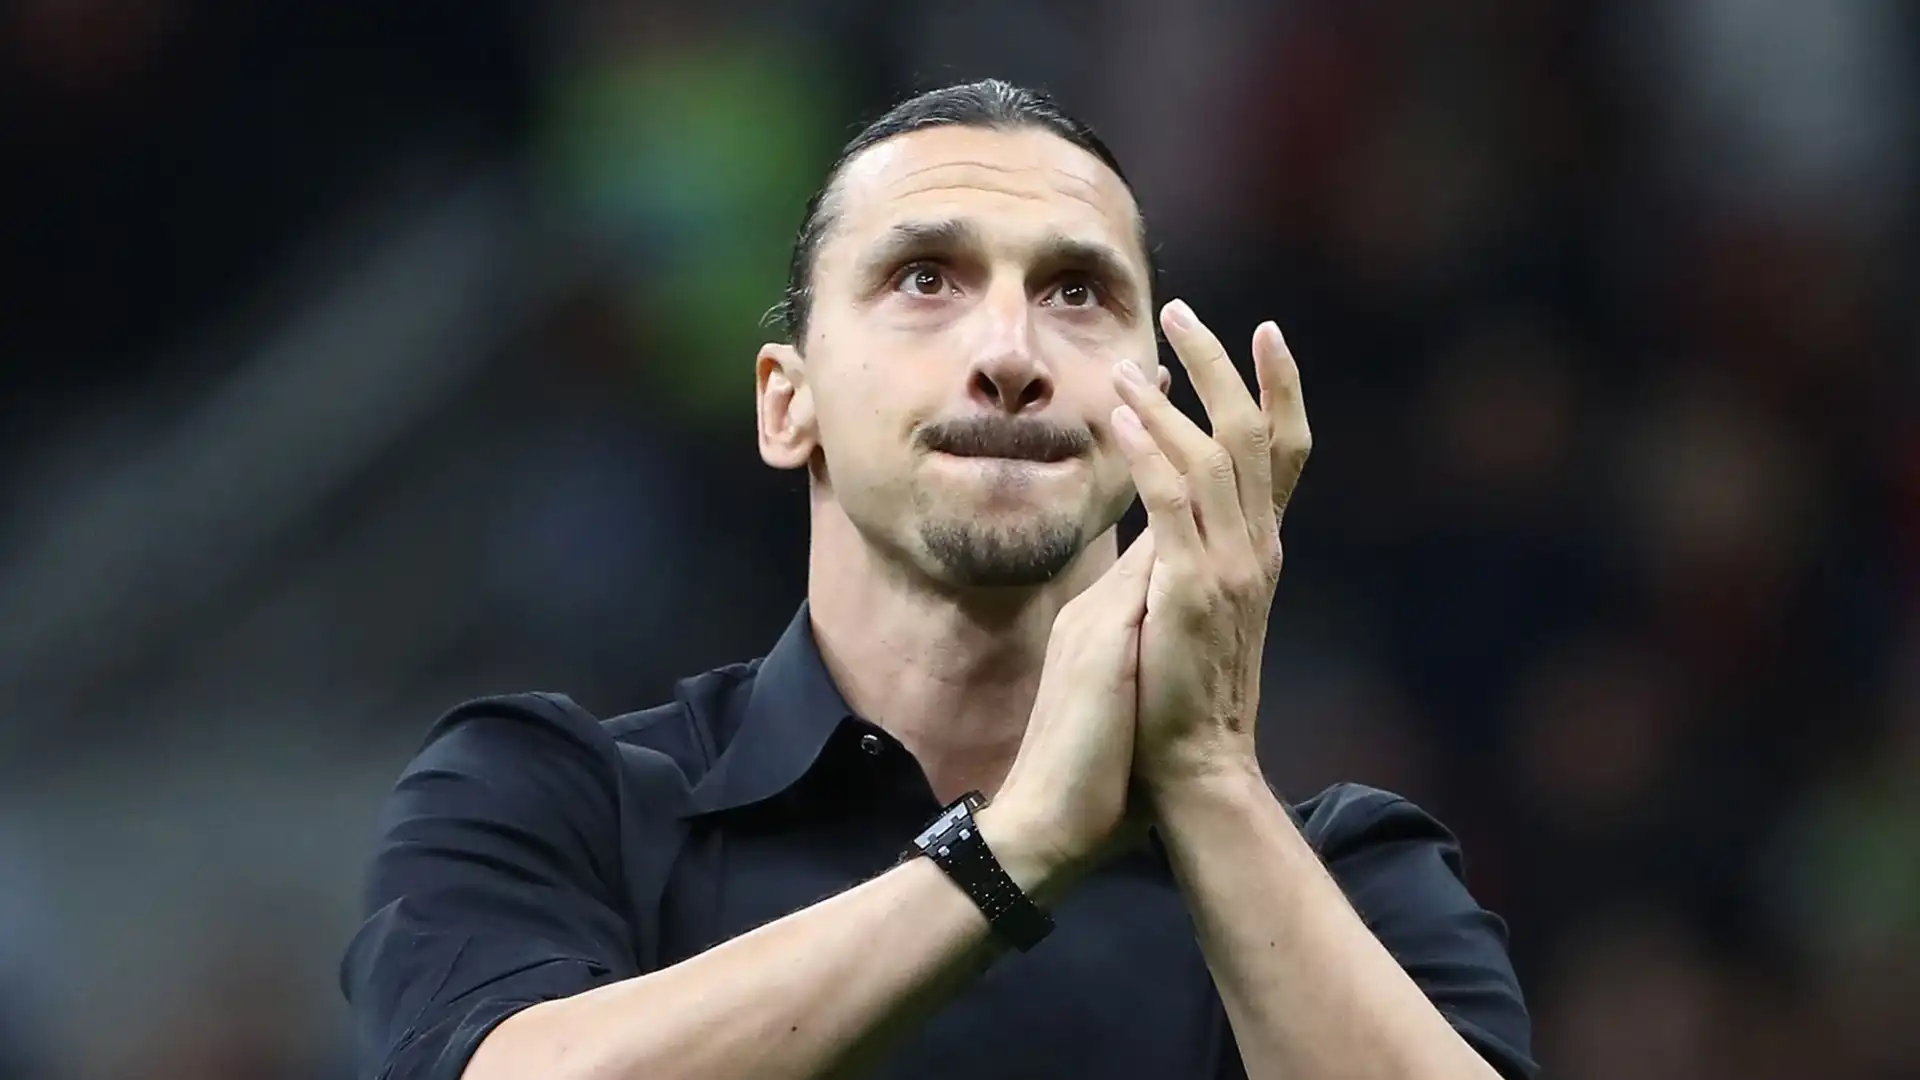 Slitta di nuovo l'incontro tra Zlatan Ibrahimovic e il Milan